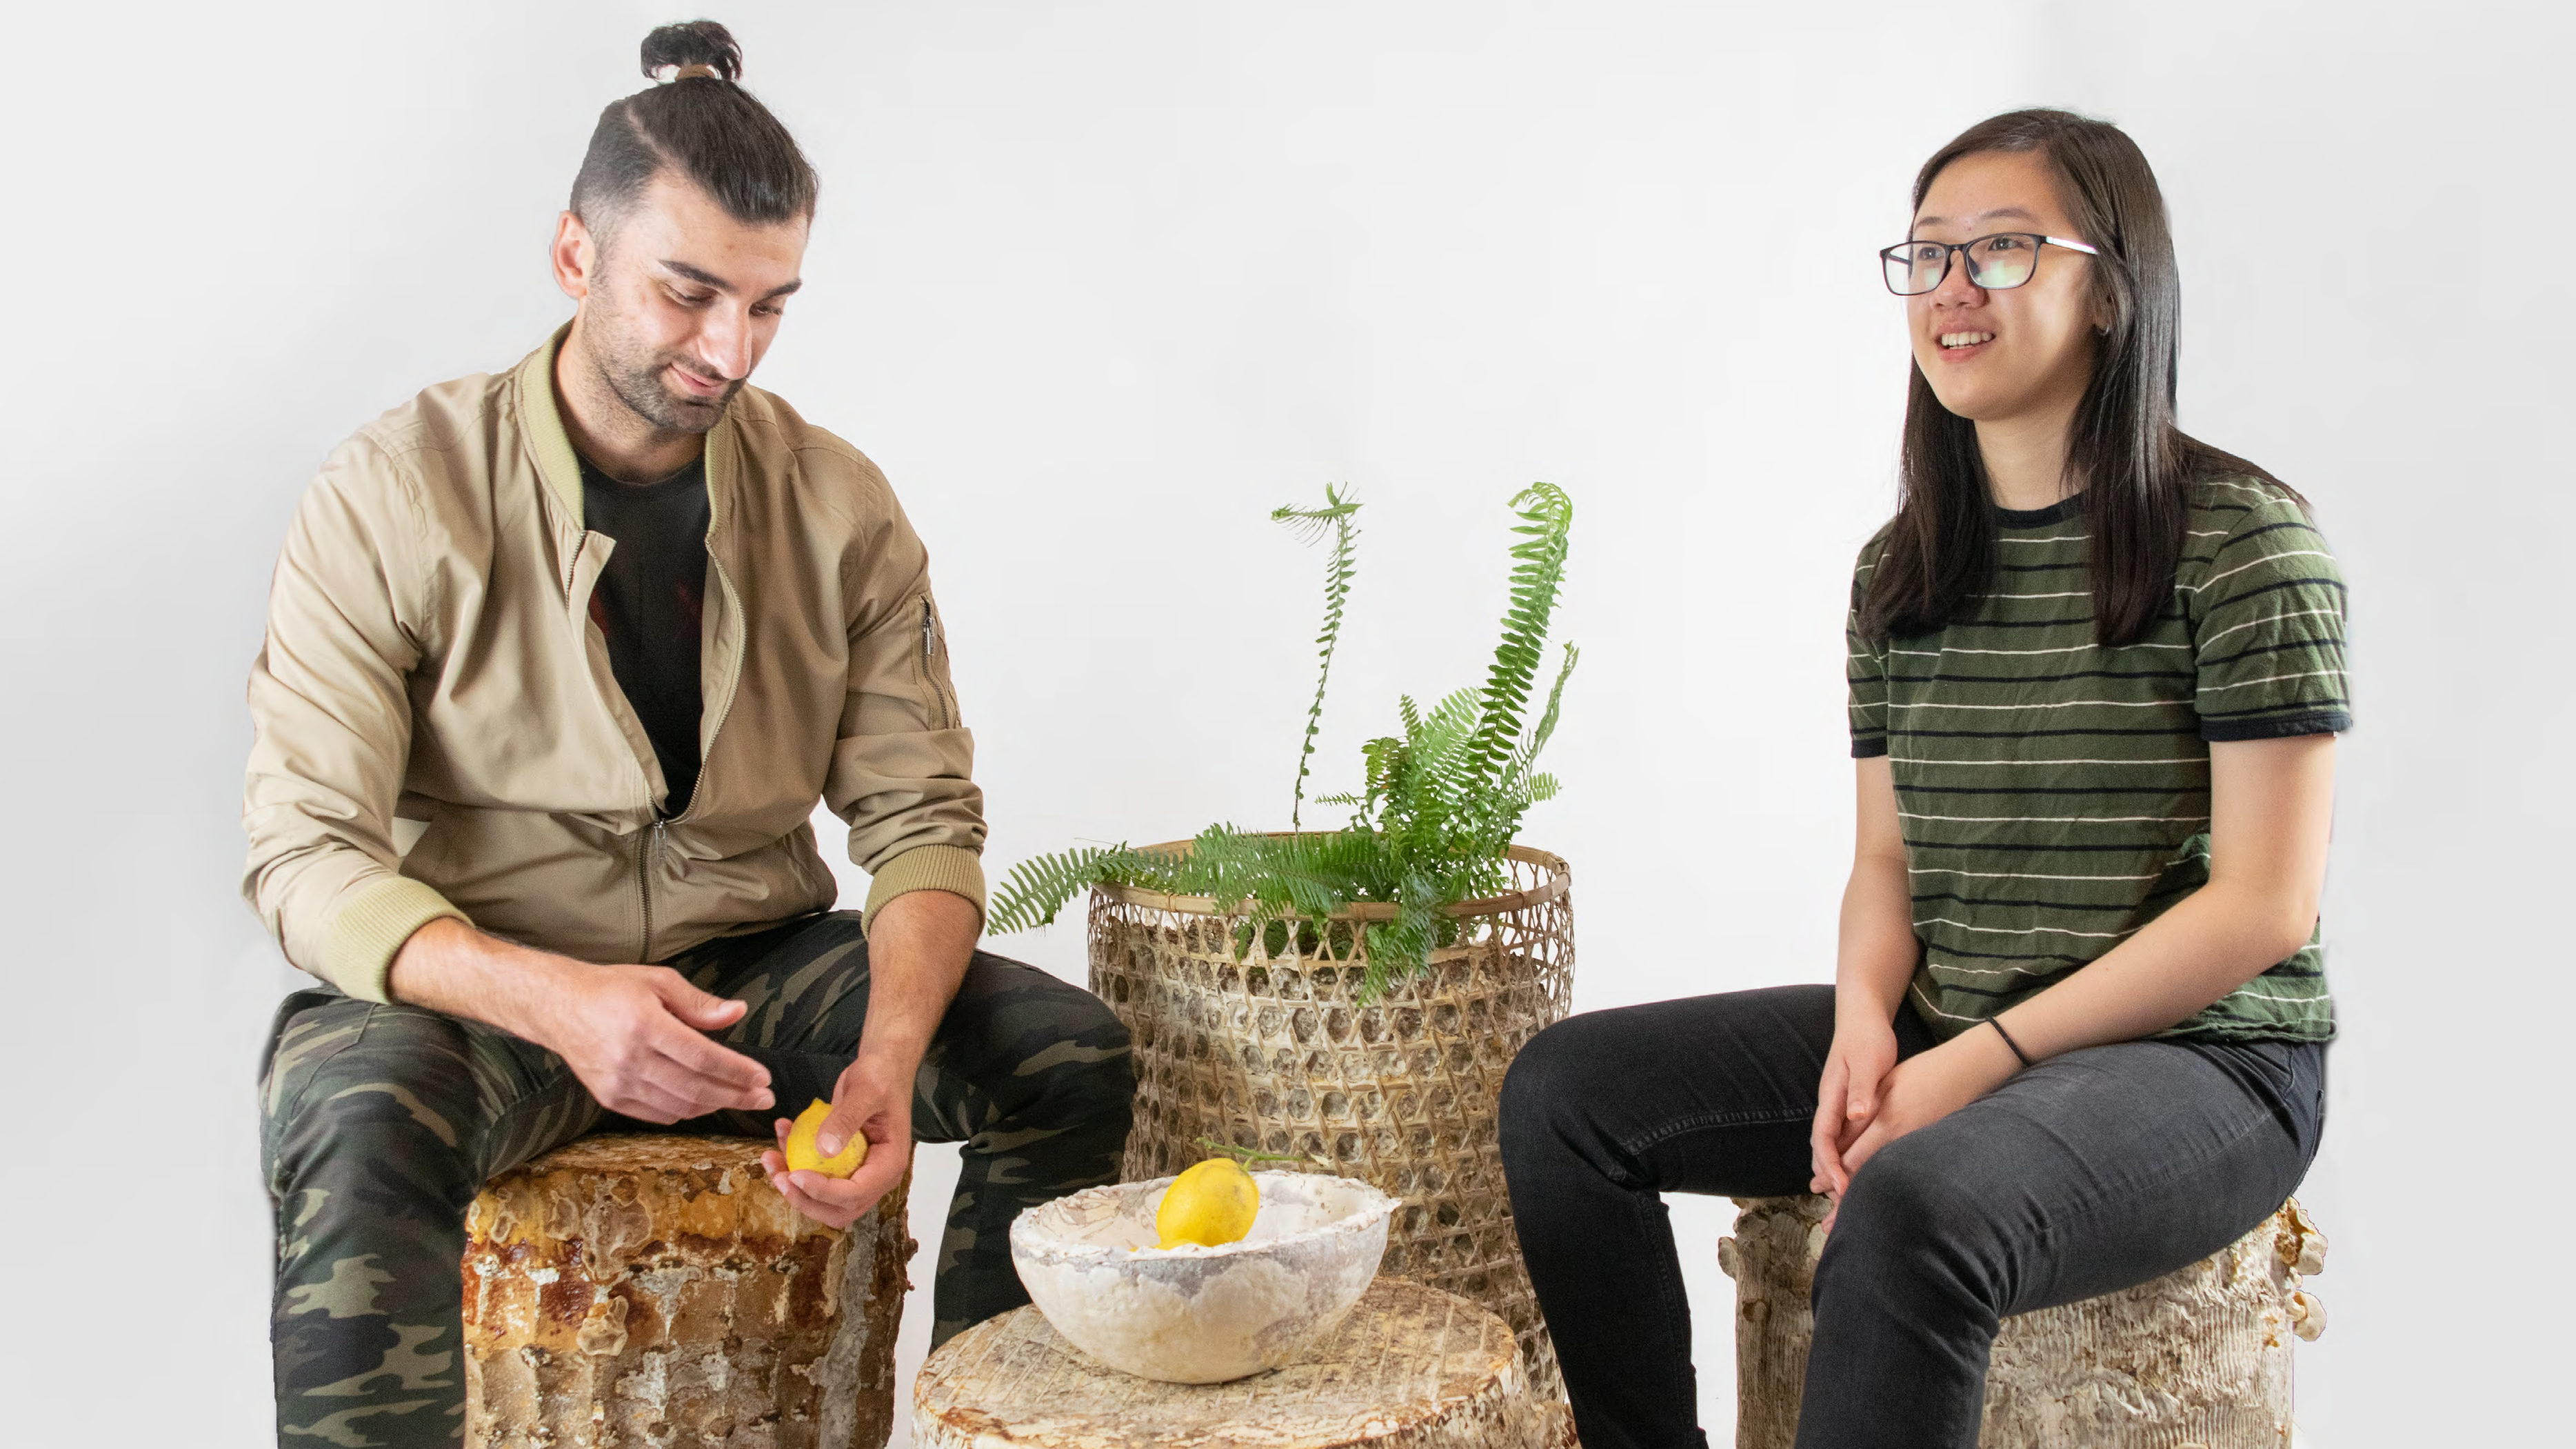 两个学生坐在他们制作的各种装饰物品的花盆上